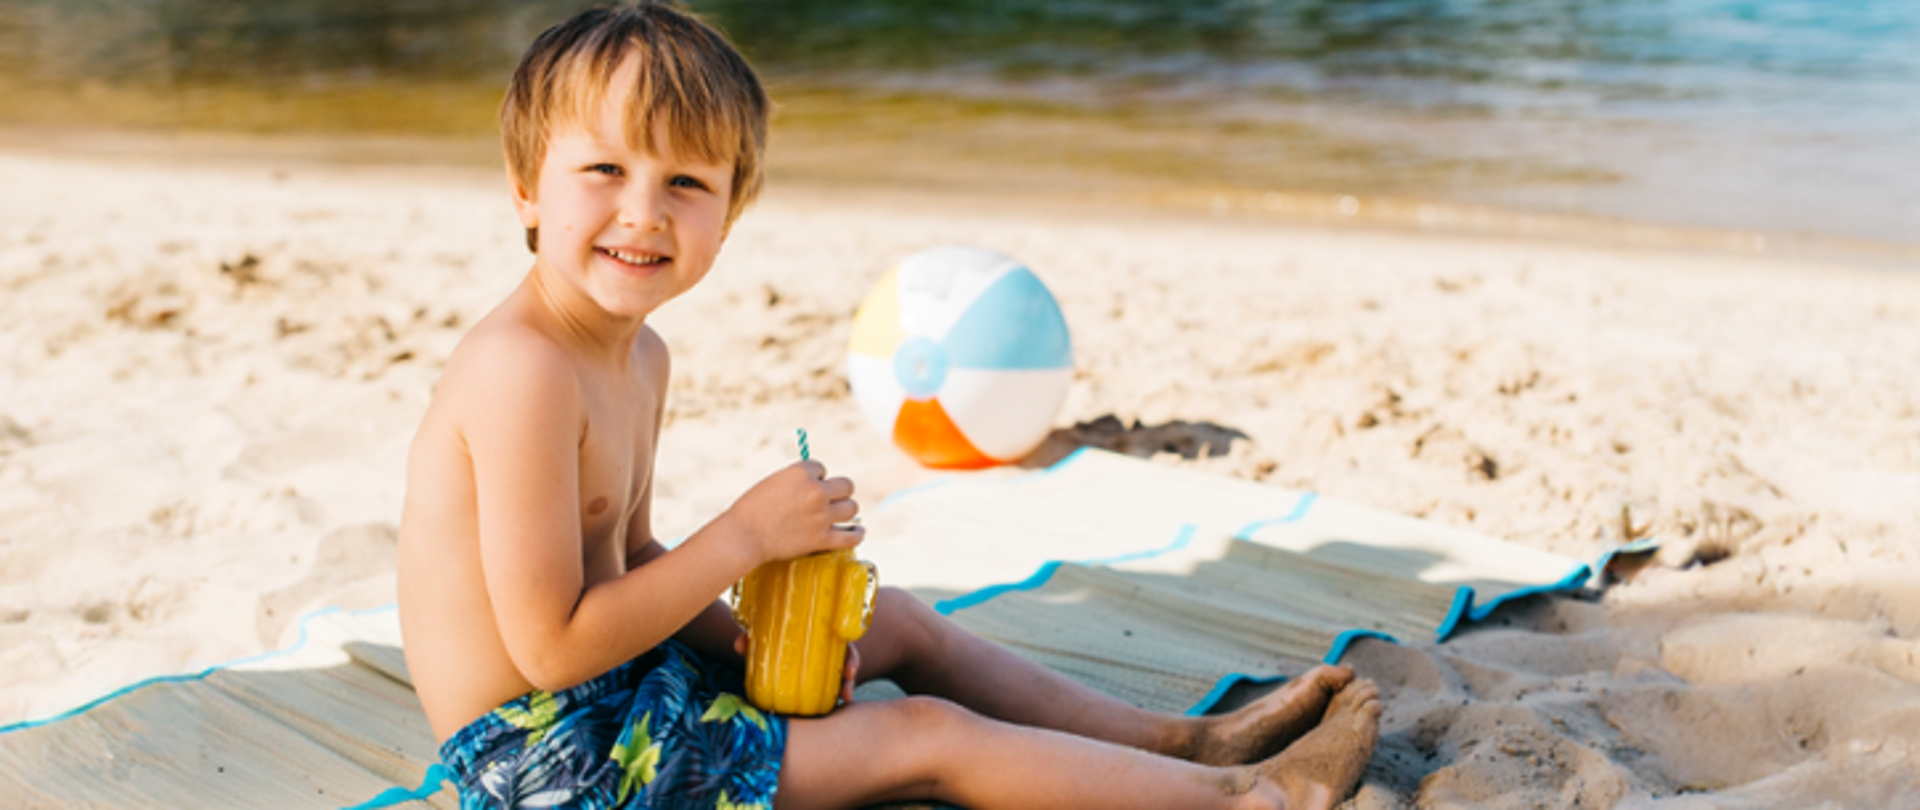 Dziecko, chłopczyk siedzi na plaży trzymając kubek . W tle piłka plażowa oraz brzeg akwenu